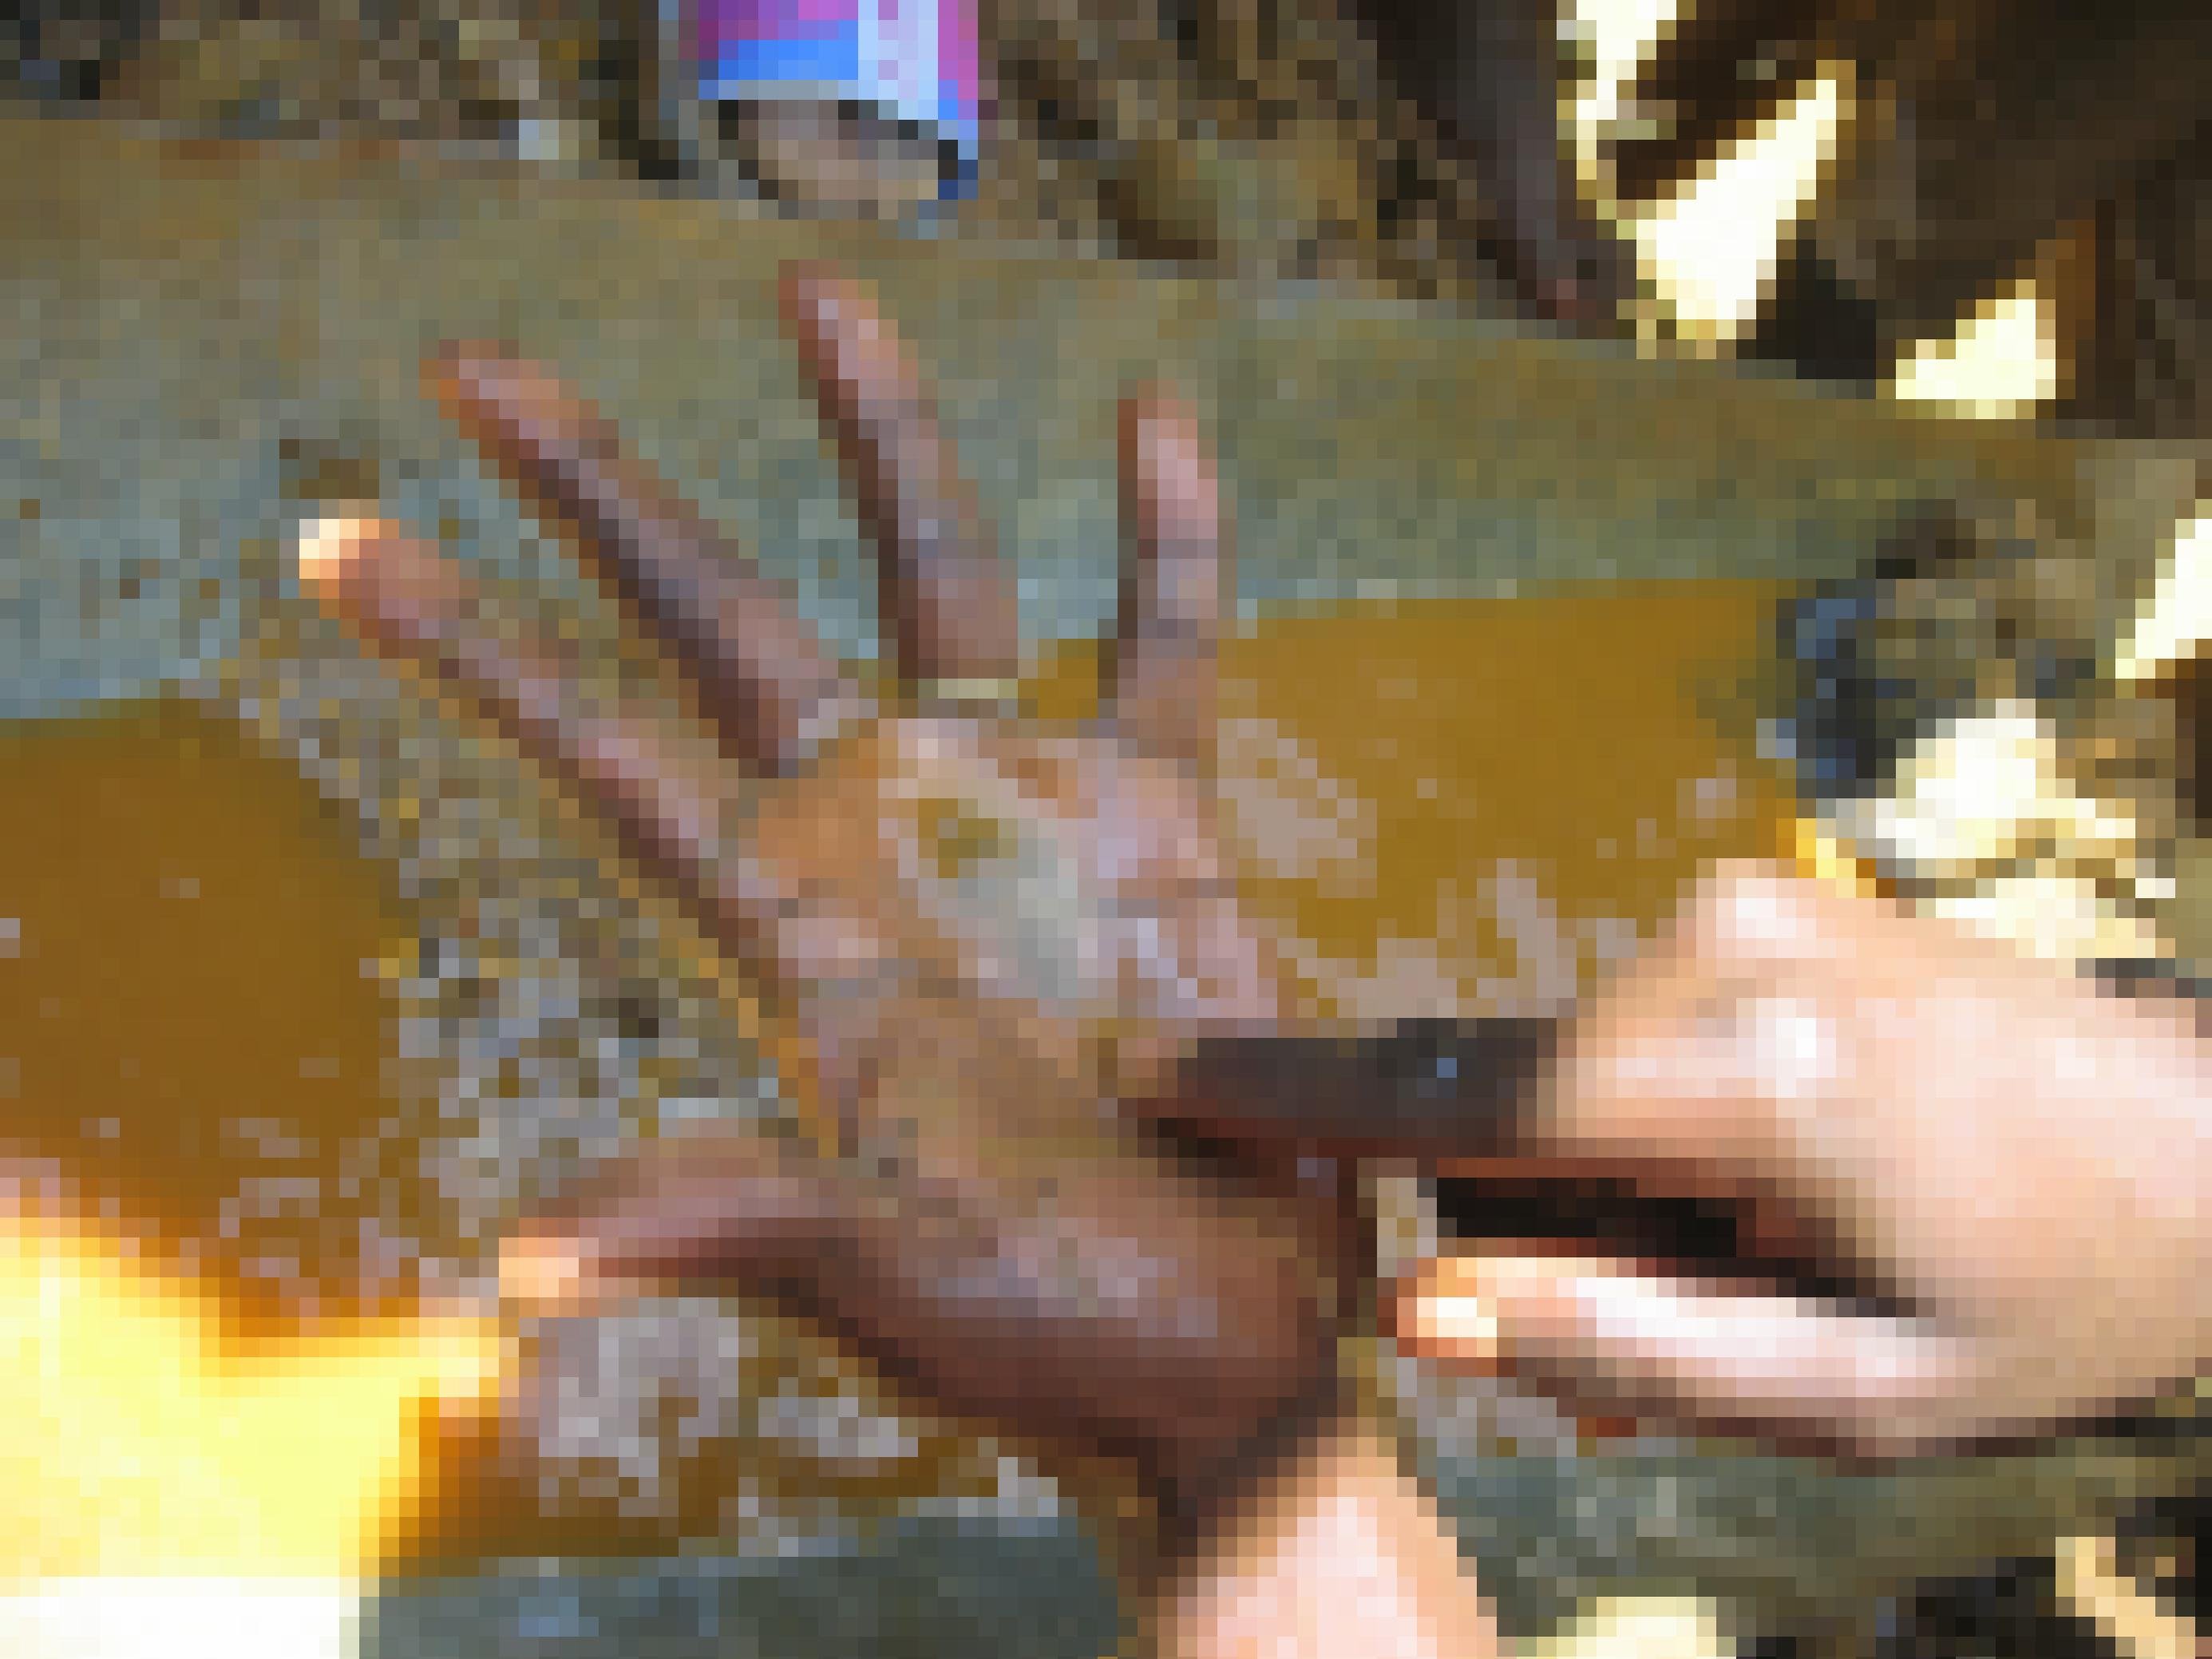 Zu sehen ist eine offene Hand mit Sand, mit dem Finger der anderen Hand zeigt jemand auf den Sand. Er will wohl zeigen, dass Goldkrümel darunter sind, sie sind mit bloßem Auge nicht zu erkennen.